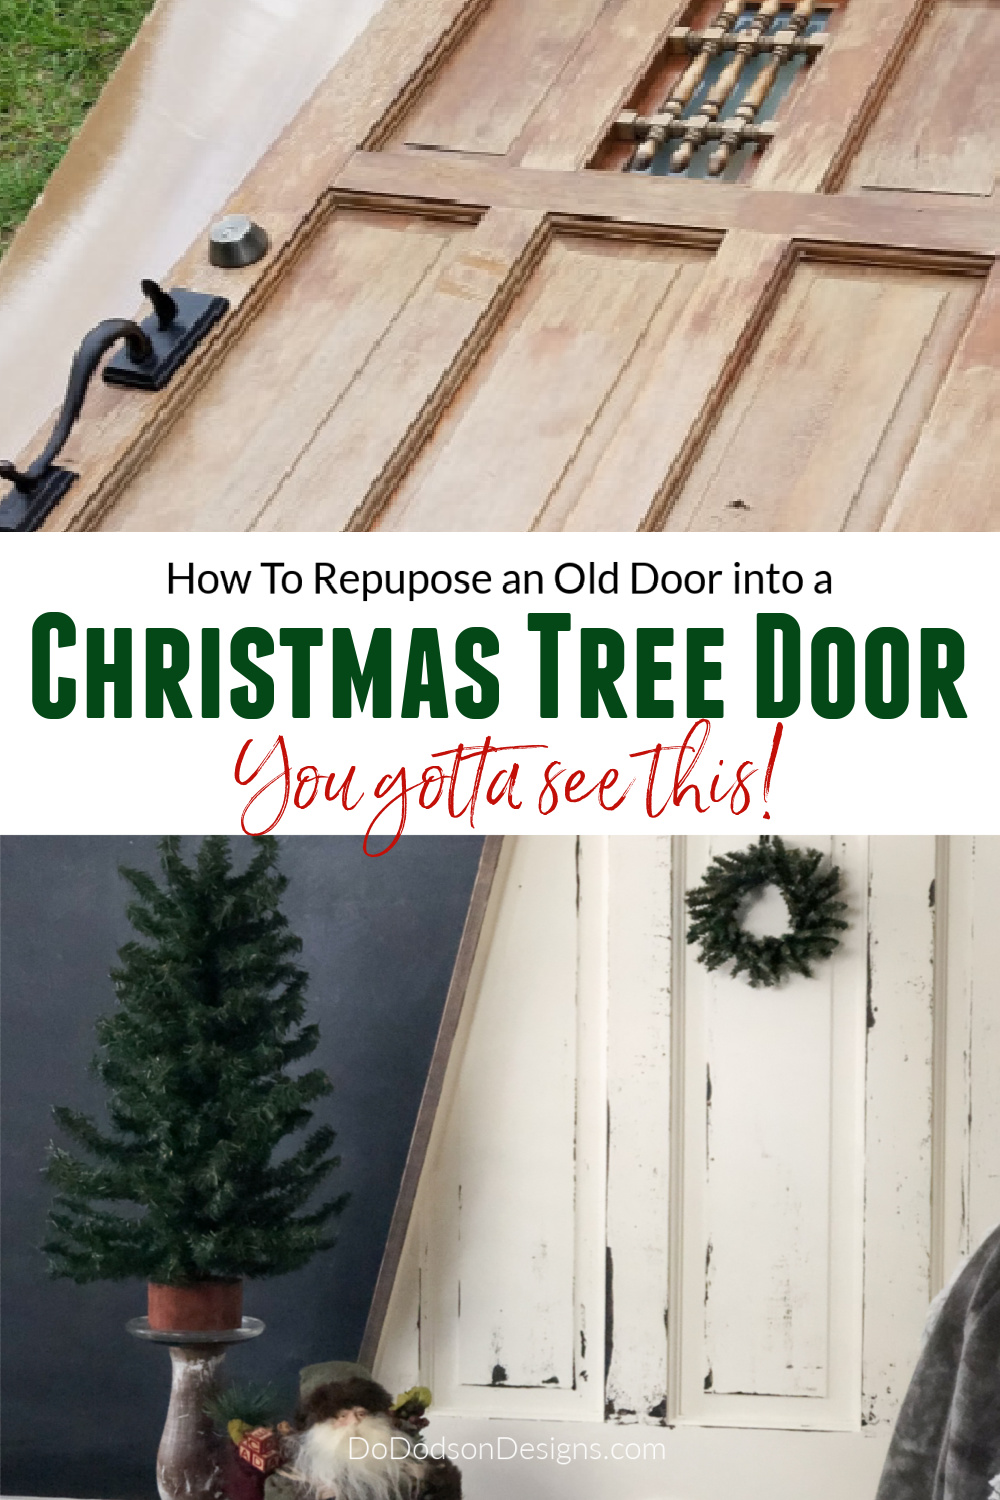 How To Make A Rustic DIY Christmas Tree Door (Old Door Repurposed)